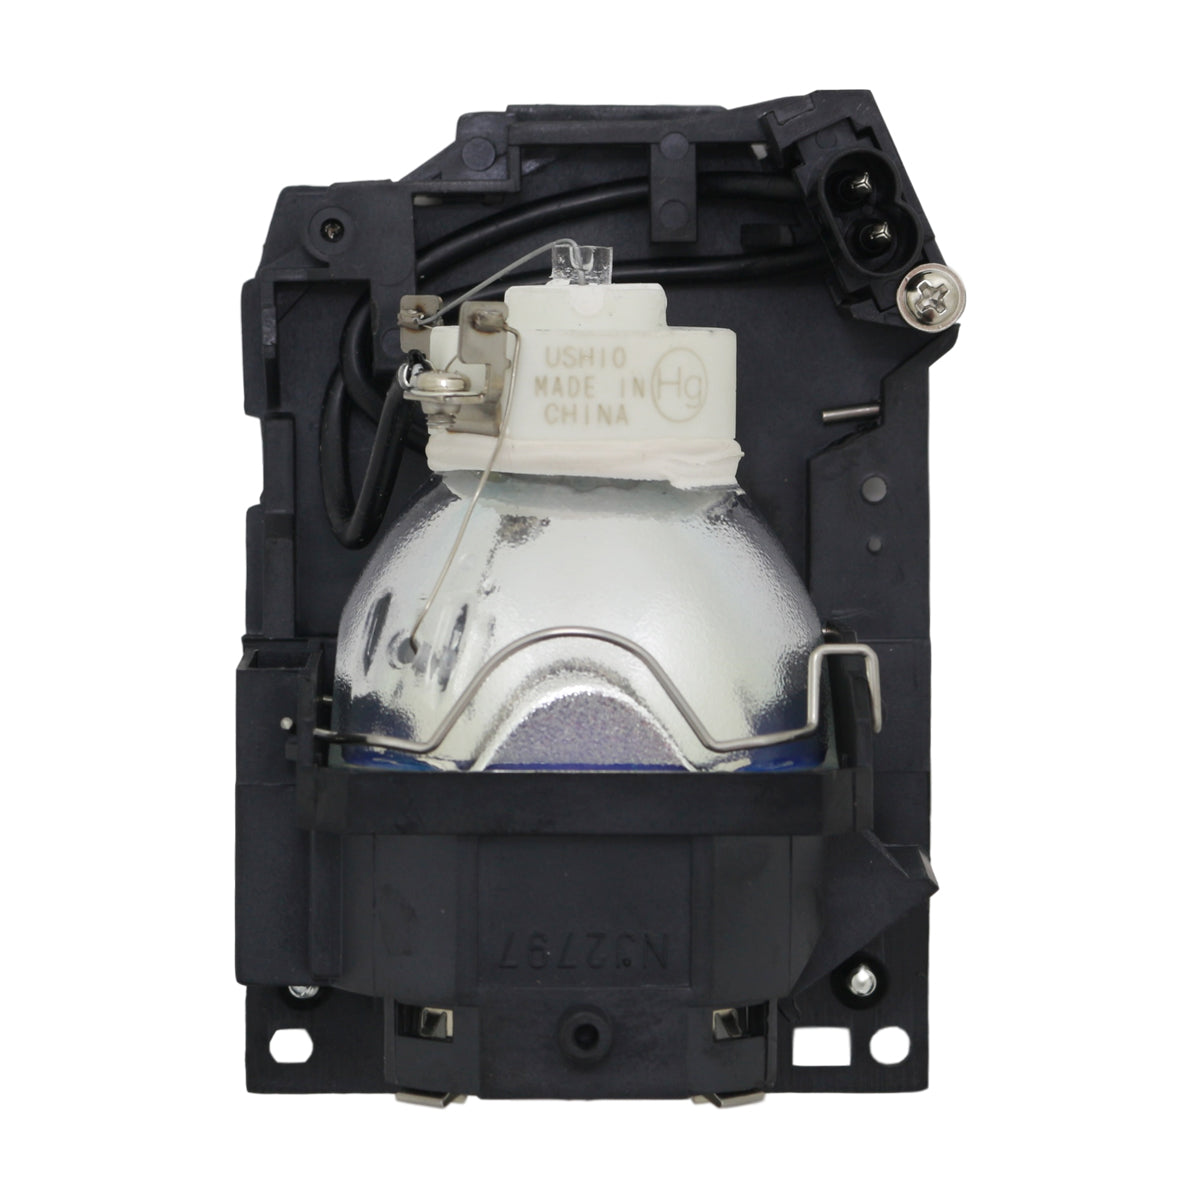 Dukane 456-8931WA Ushio Projector Lamp Module